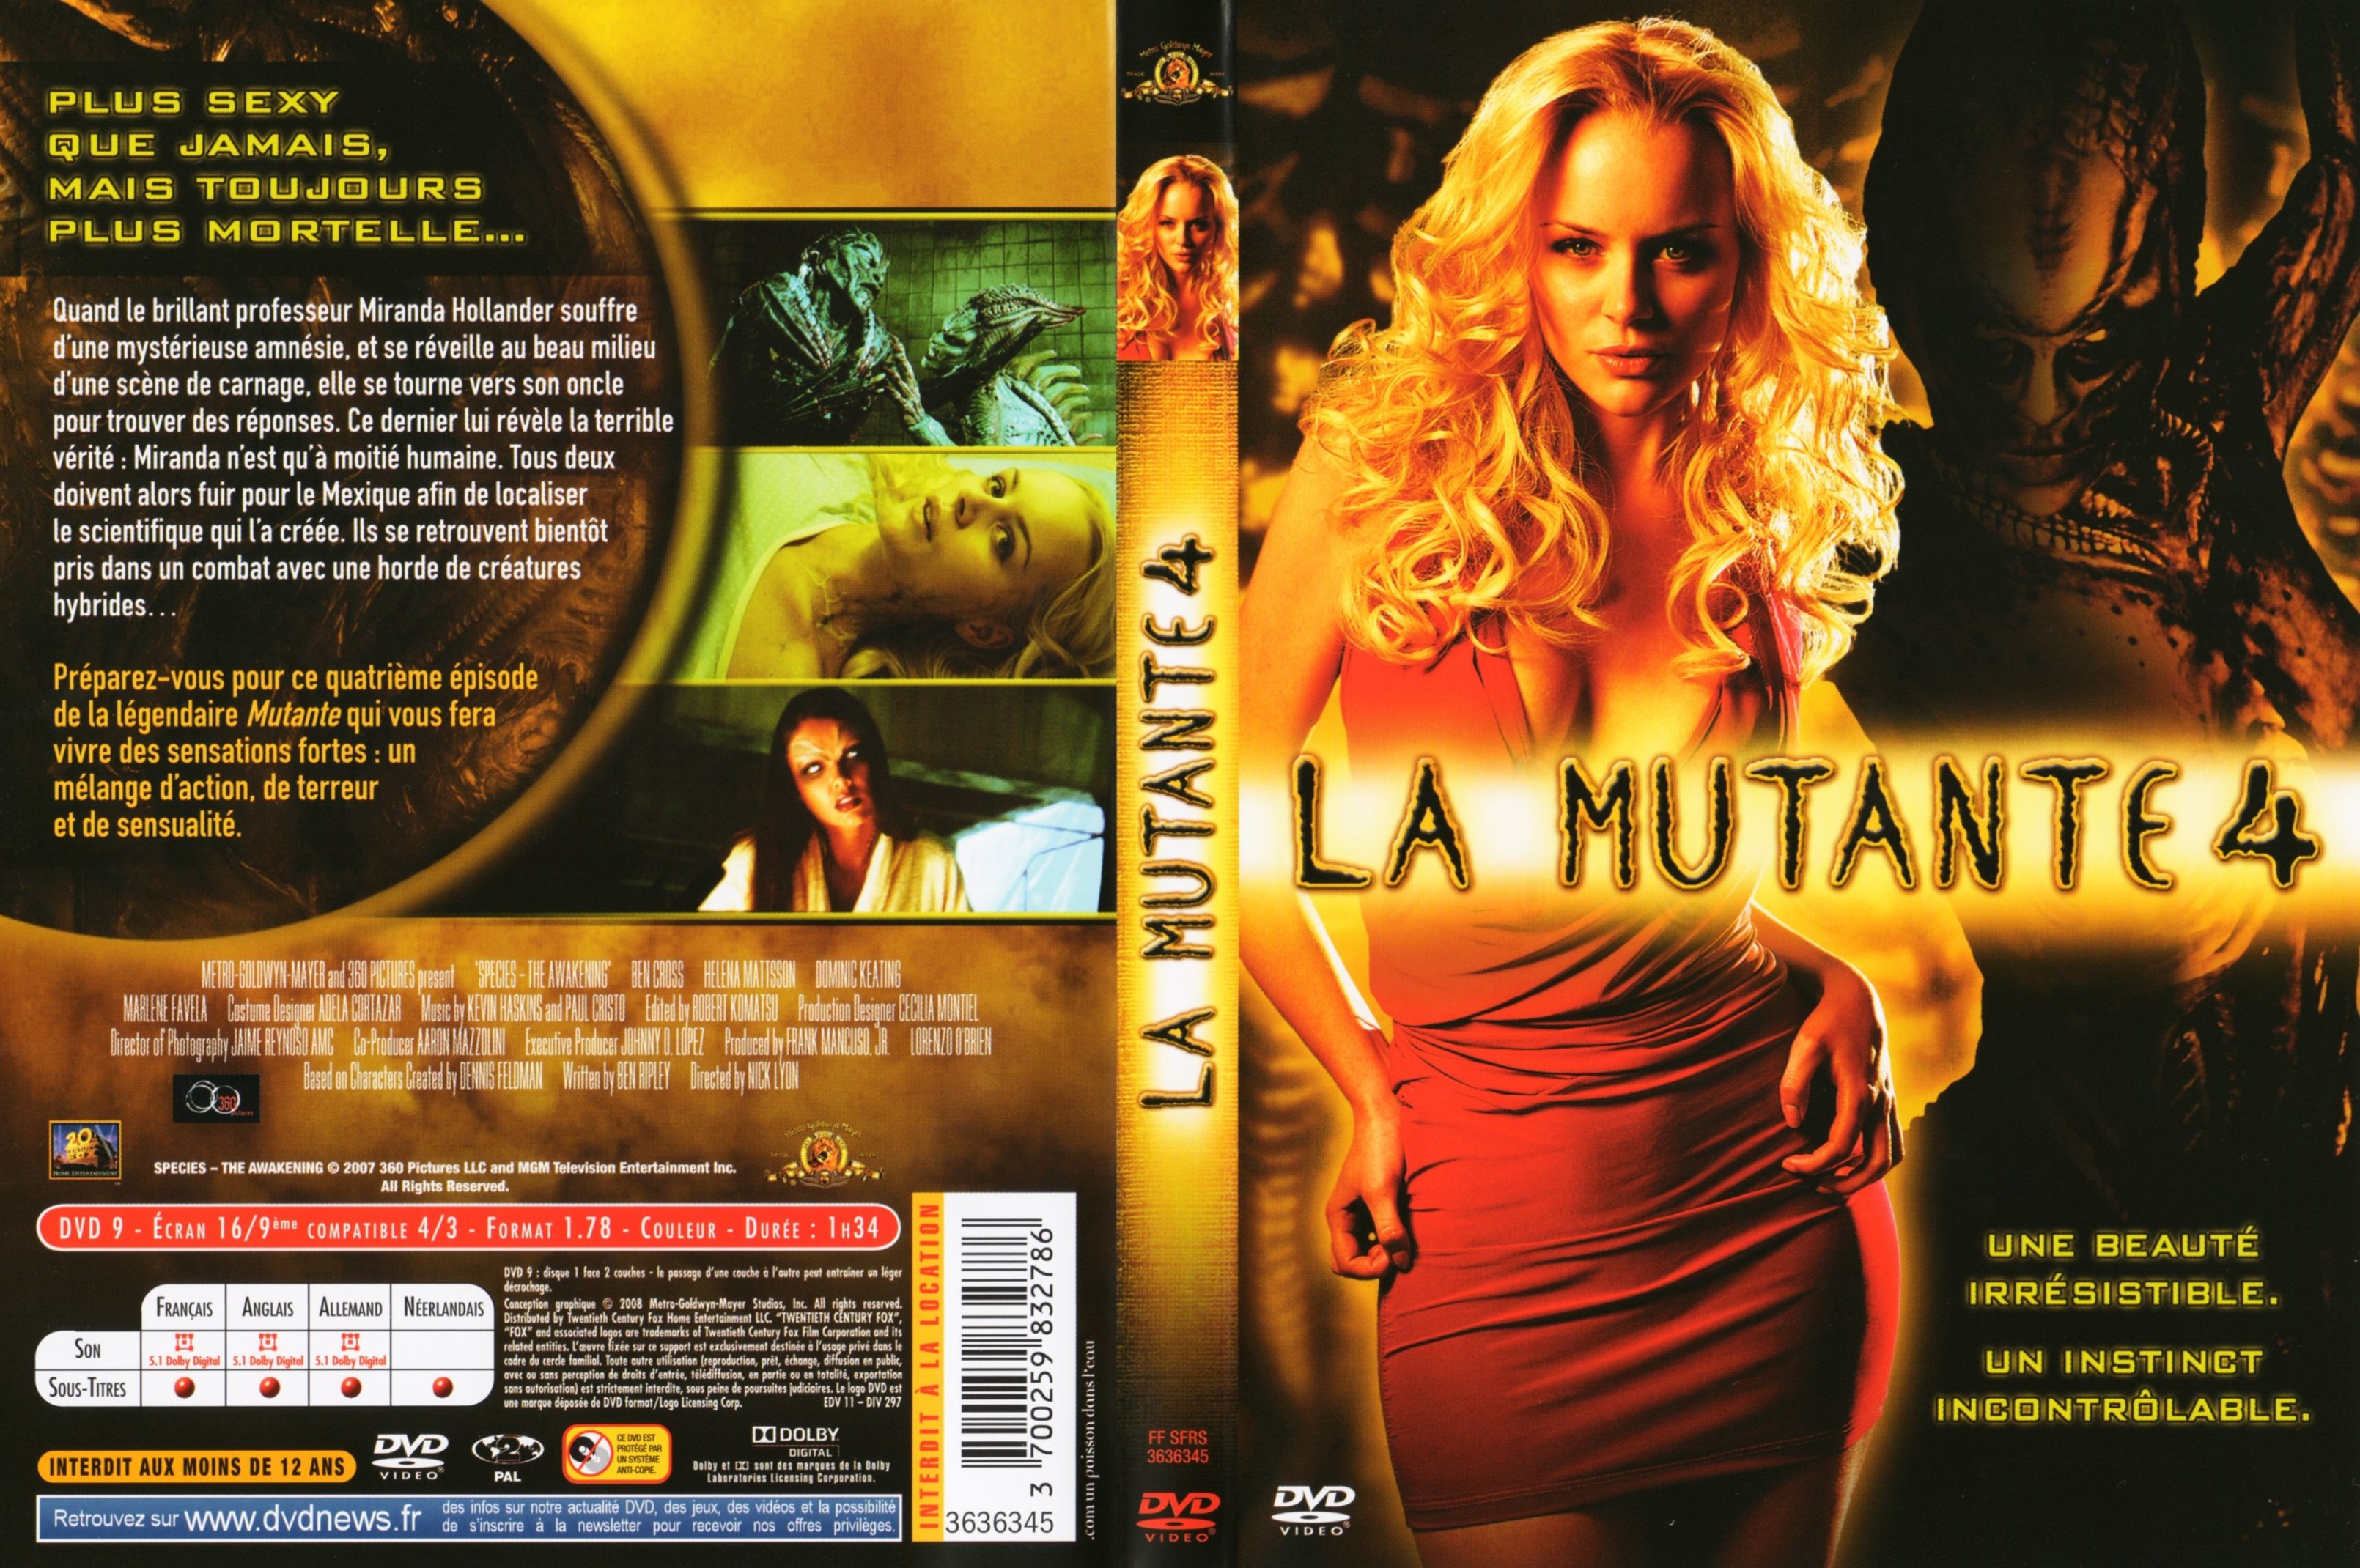 Jaquette DVD La mutante 4 v2